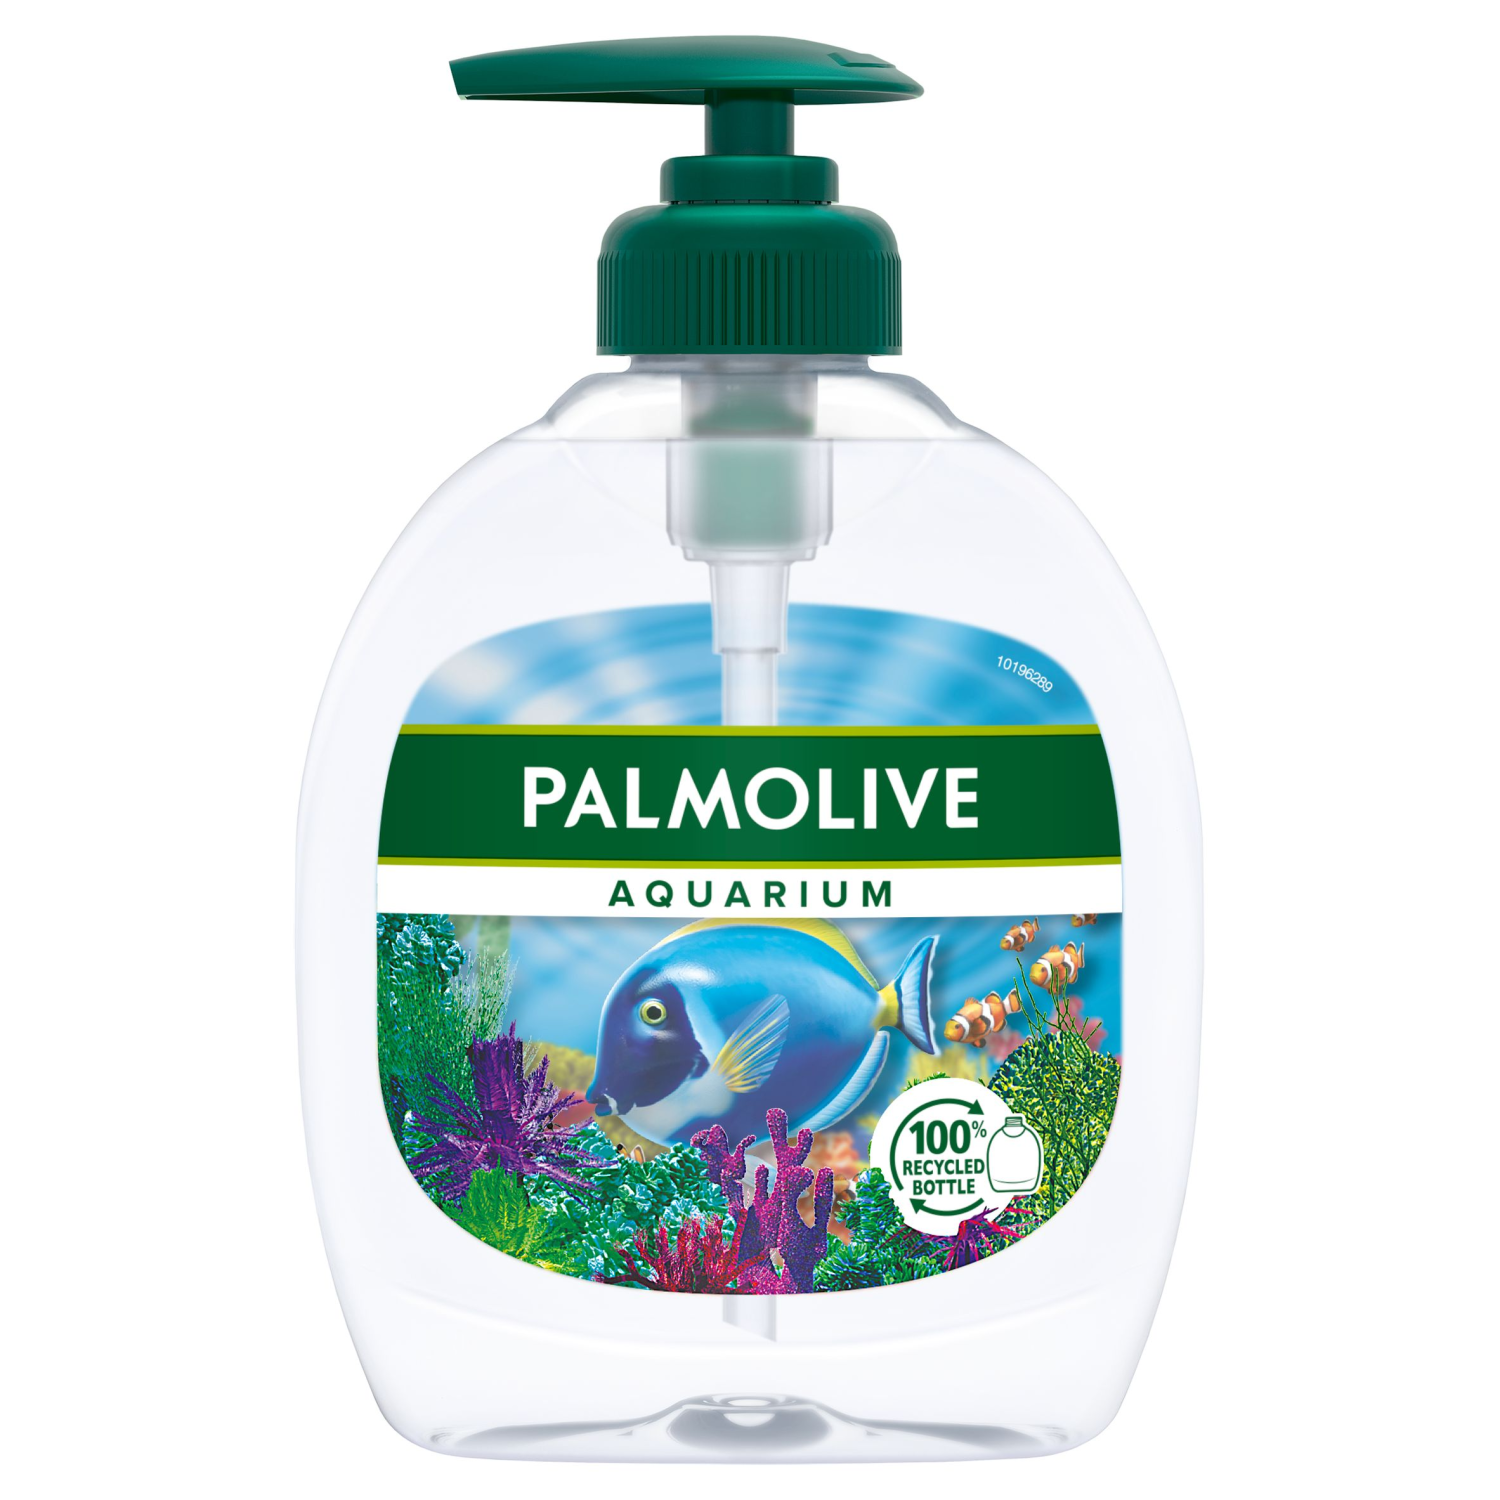 Palmolive Aquarium жидкое мыло для рук, 300 мл жидкое мыло palmolive 300 мл для мытья рук на кухне нейтрализующее запах